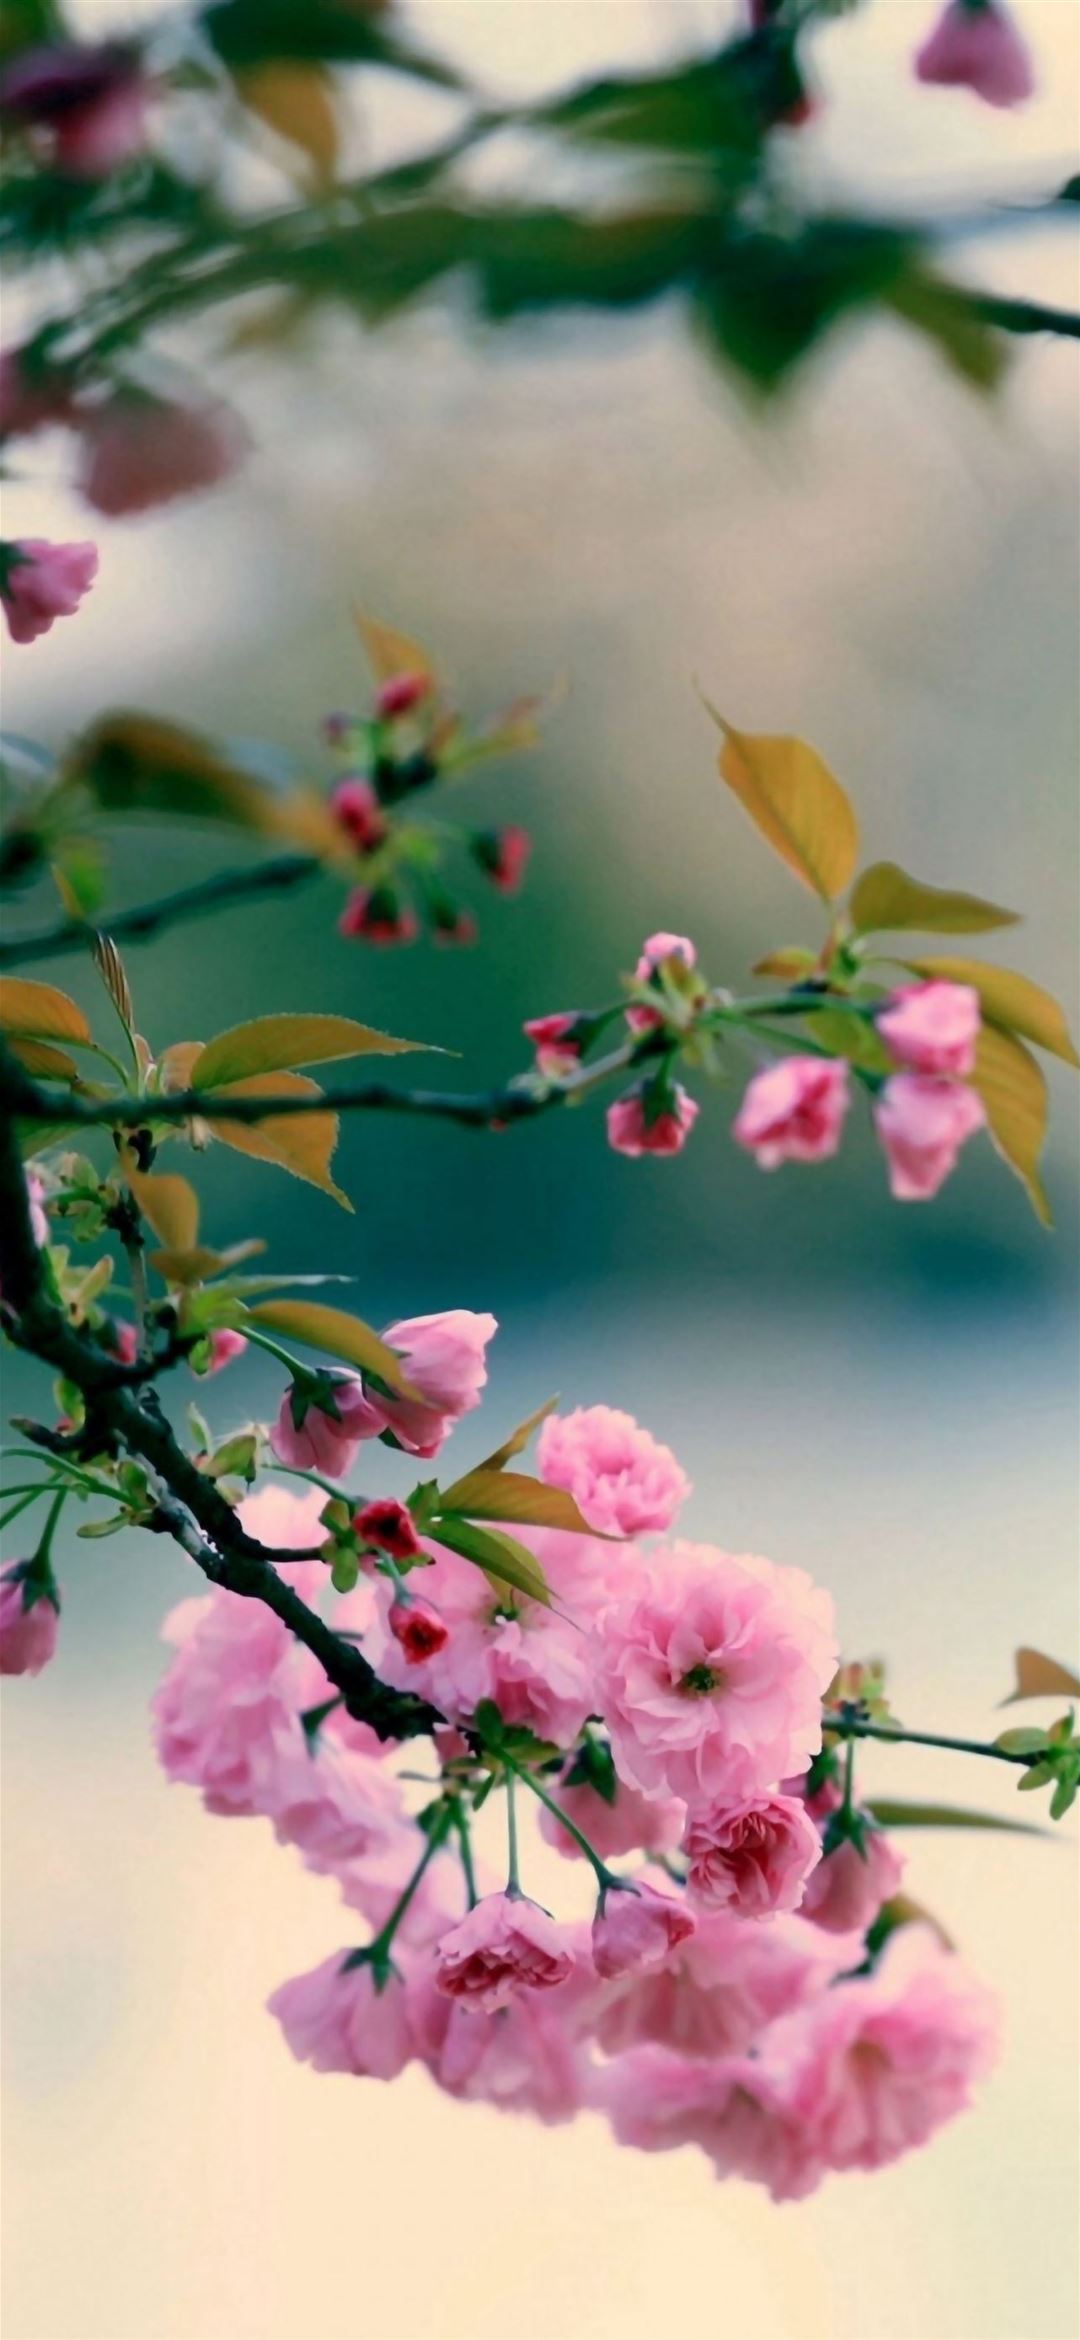 Hoa mai là loài hoa mang ý nghĩa may mắn, sự thịnh vượng và thành đạt. Hãy đến và thưởng thức bức ảnh hoa mai tuyệt đẹp này để cảm nhận sự tươi tắn và lạc quan của những cành hoa đang nở rộ trong không khí đầu xuân. 